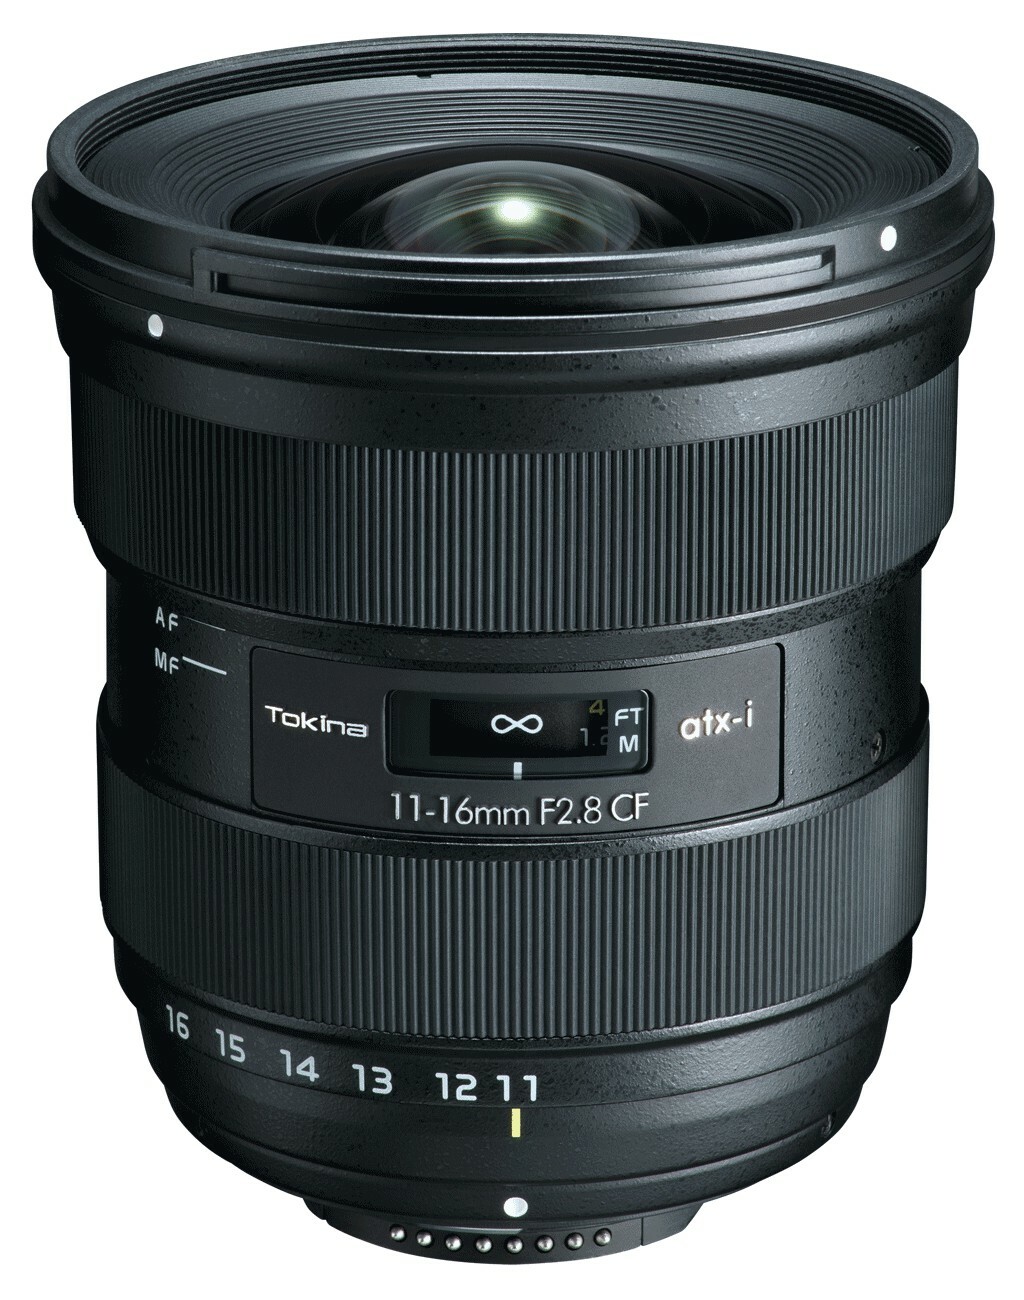 Tokina atx-i 11-16mm F2.8 CF PLUS Nikon F